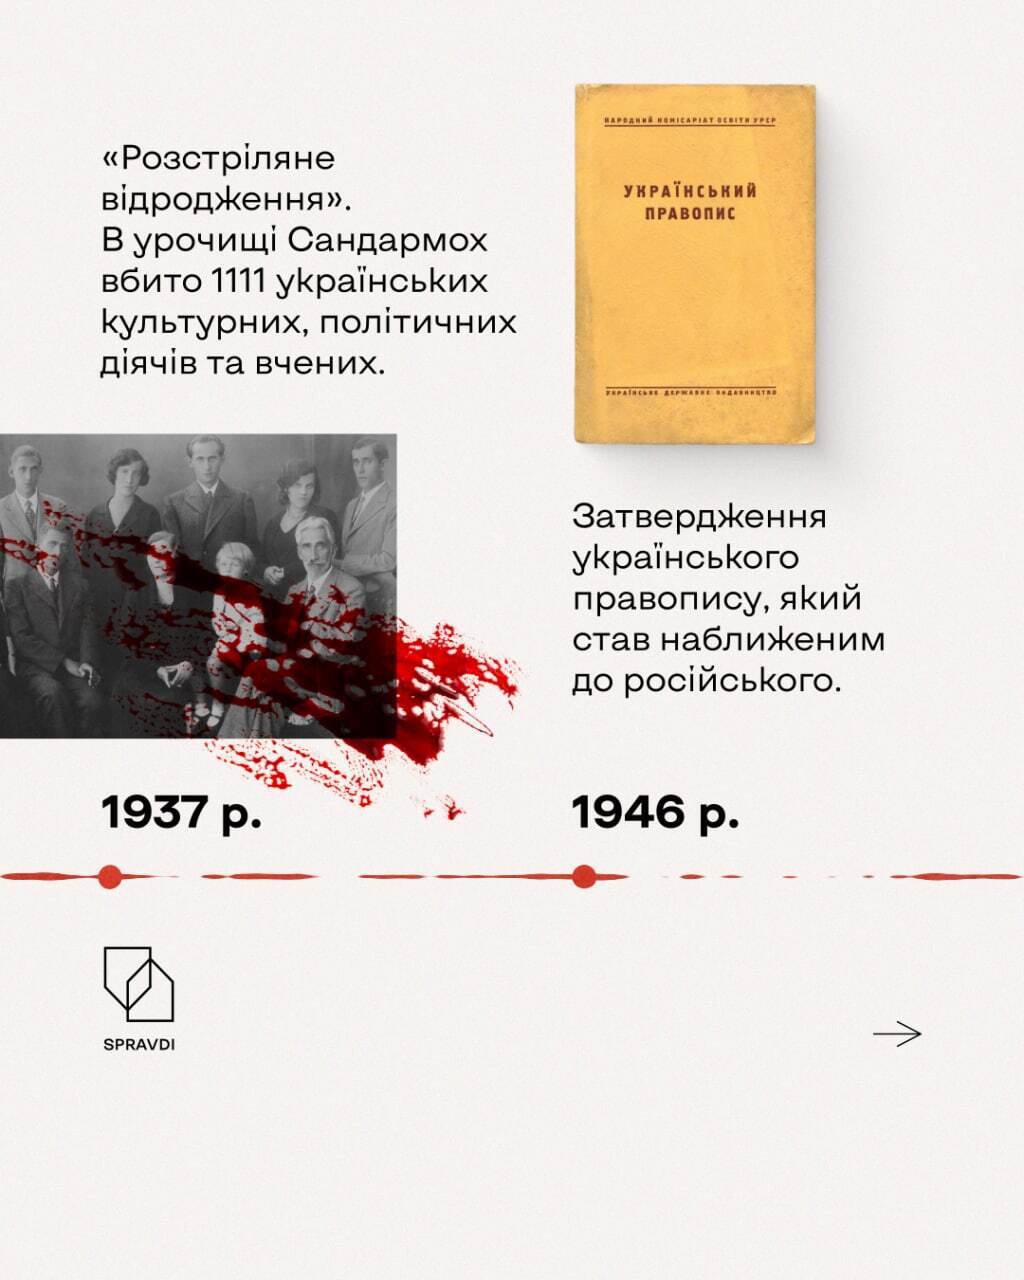 Советская власть десятилетиями преследовала украинскую интеллигенцию